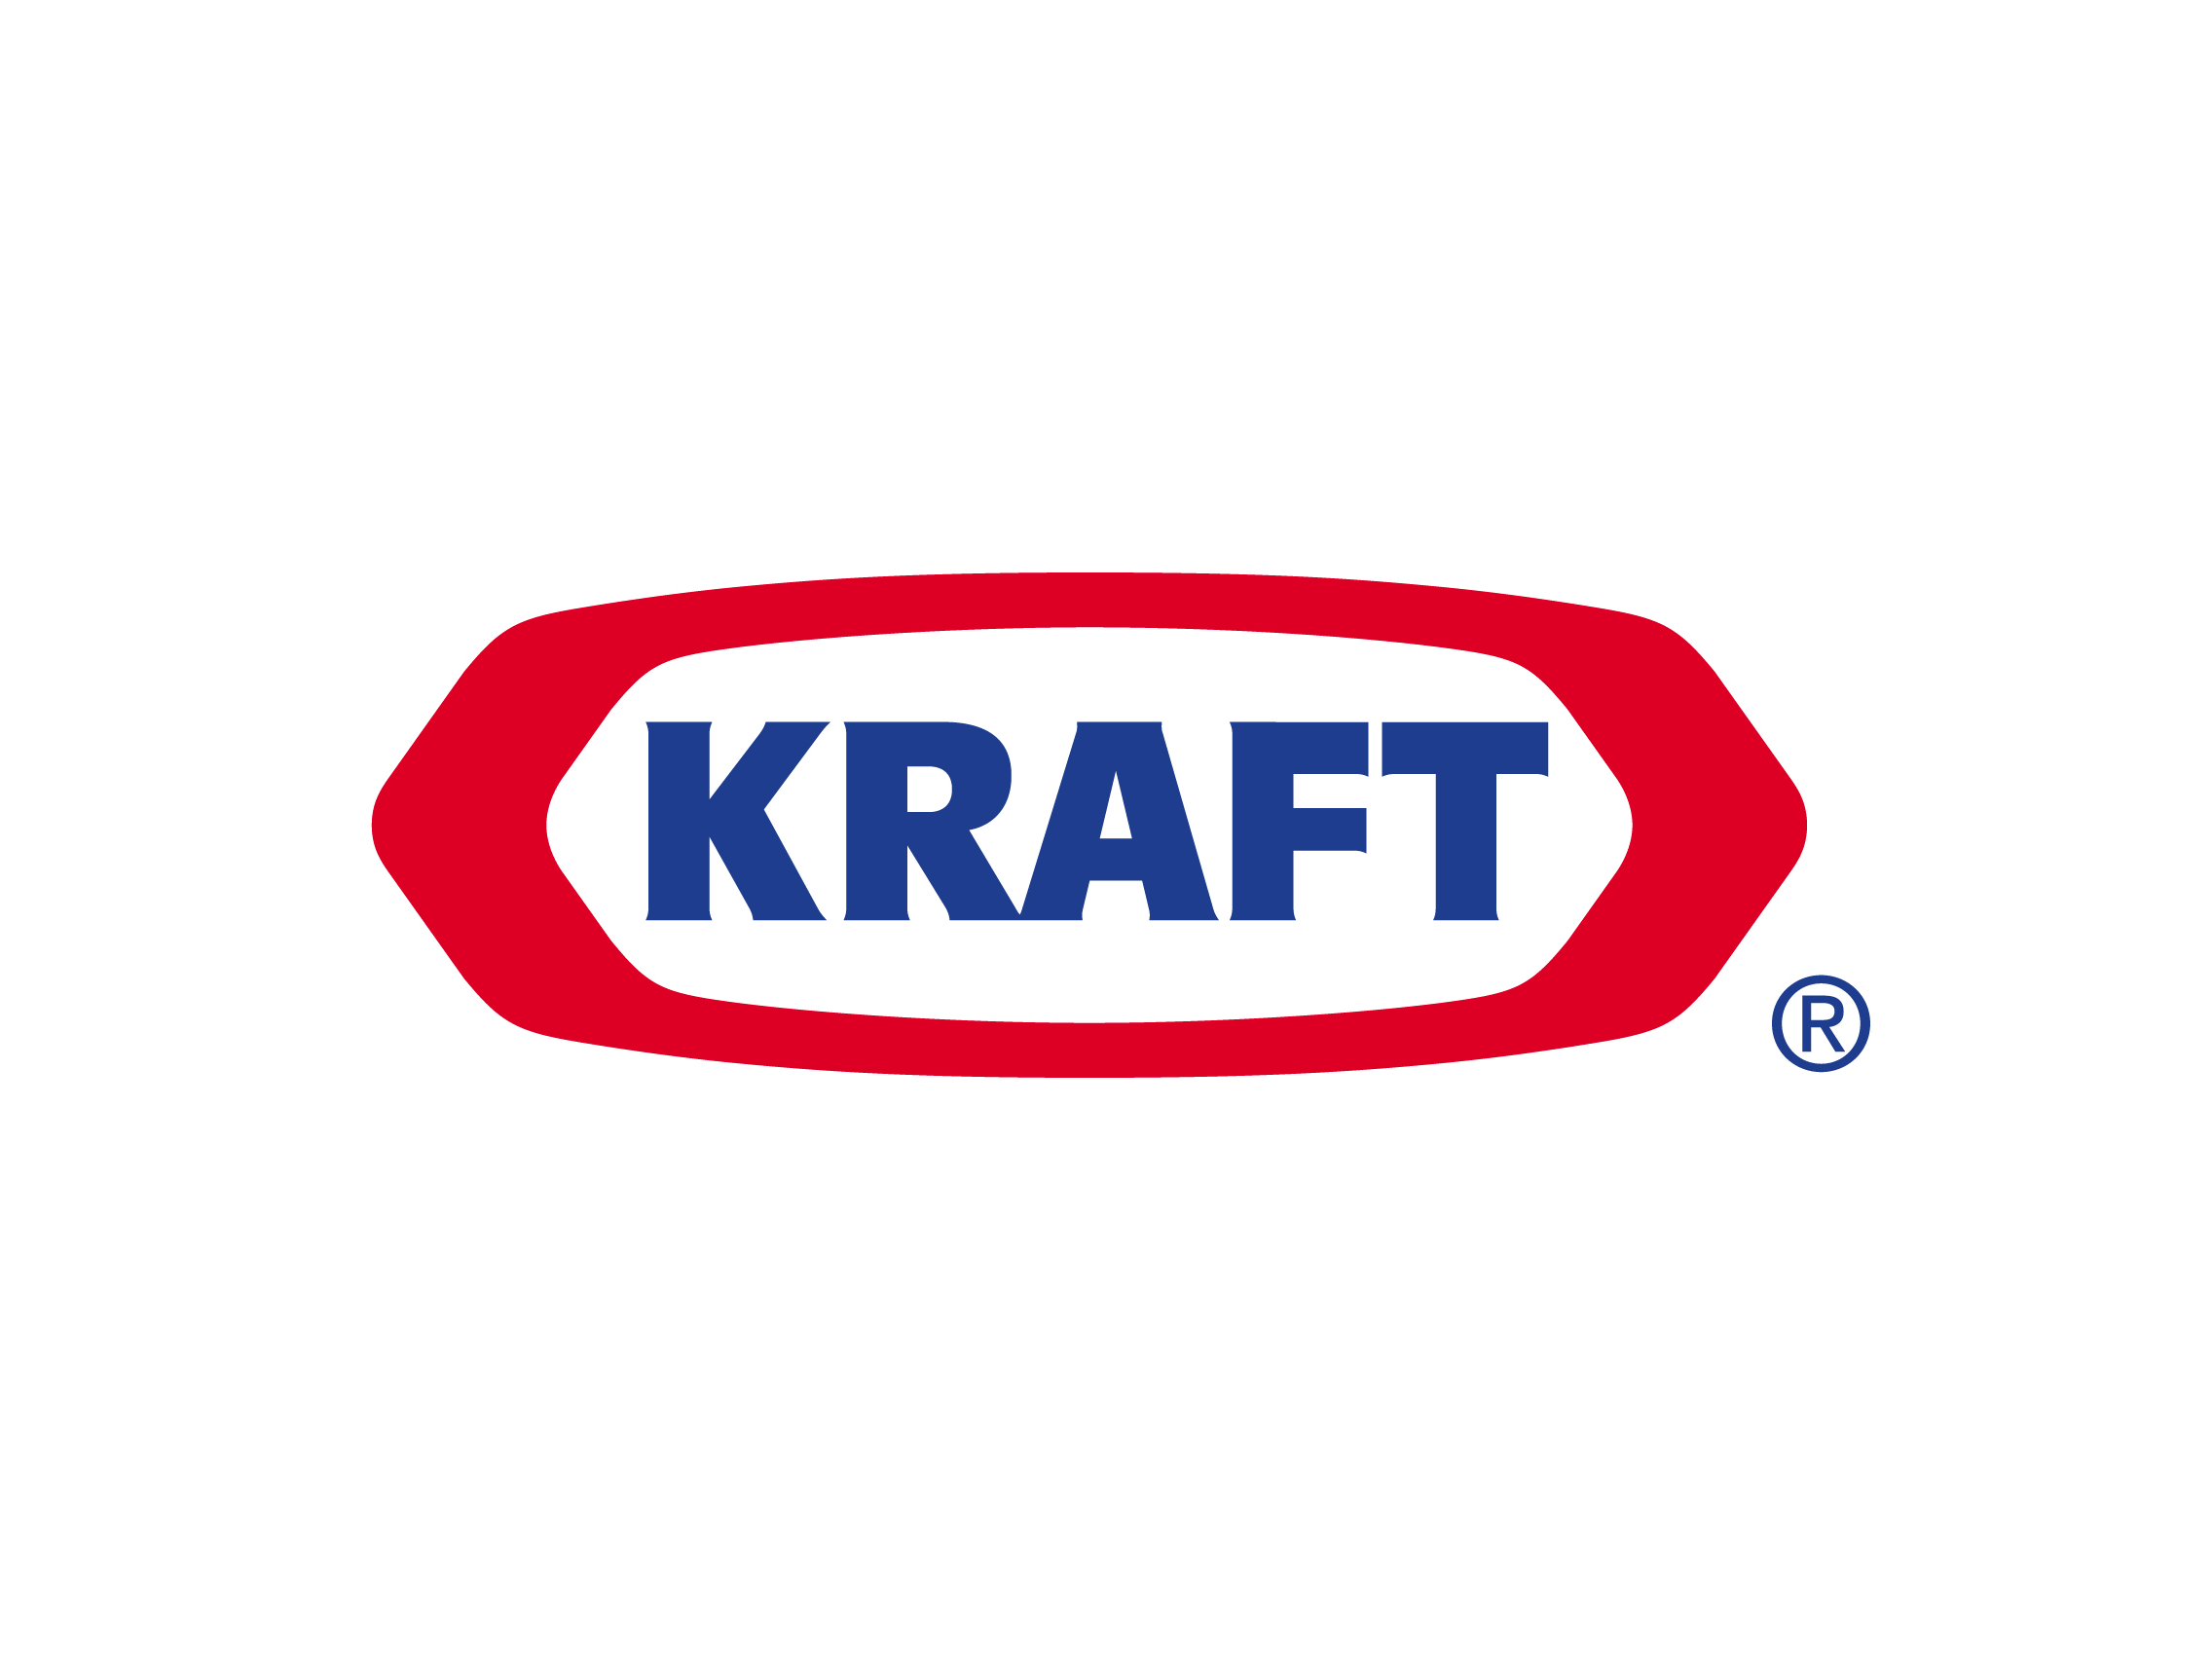 Old Food Brand Logo - Kraft logo